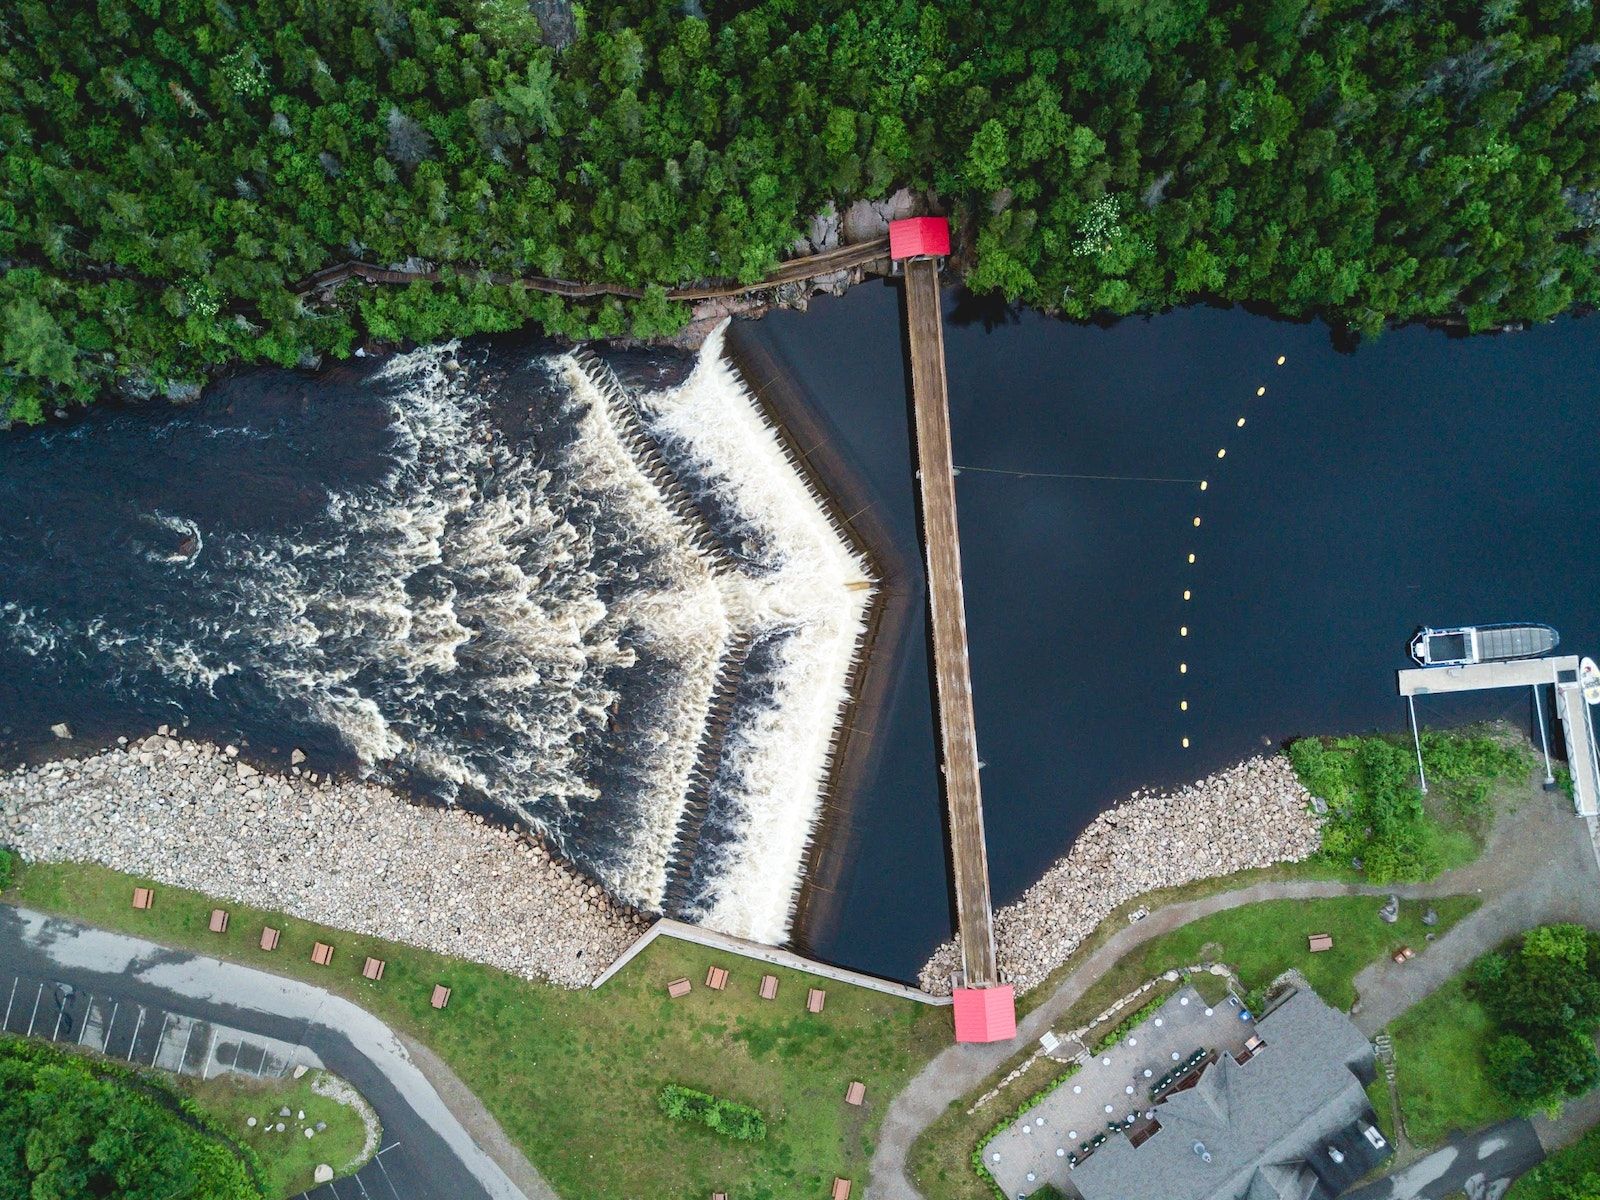  Vue aérienne d'un barrage au Canada atlantique